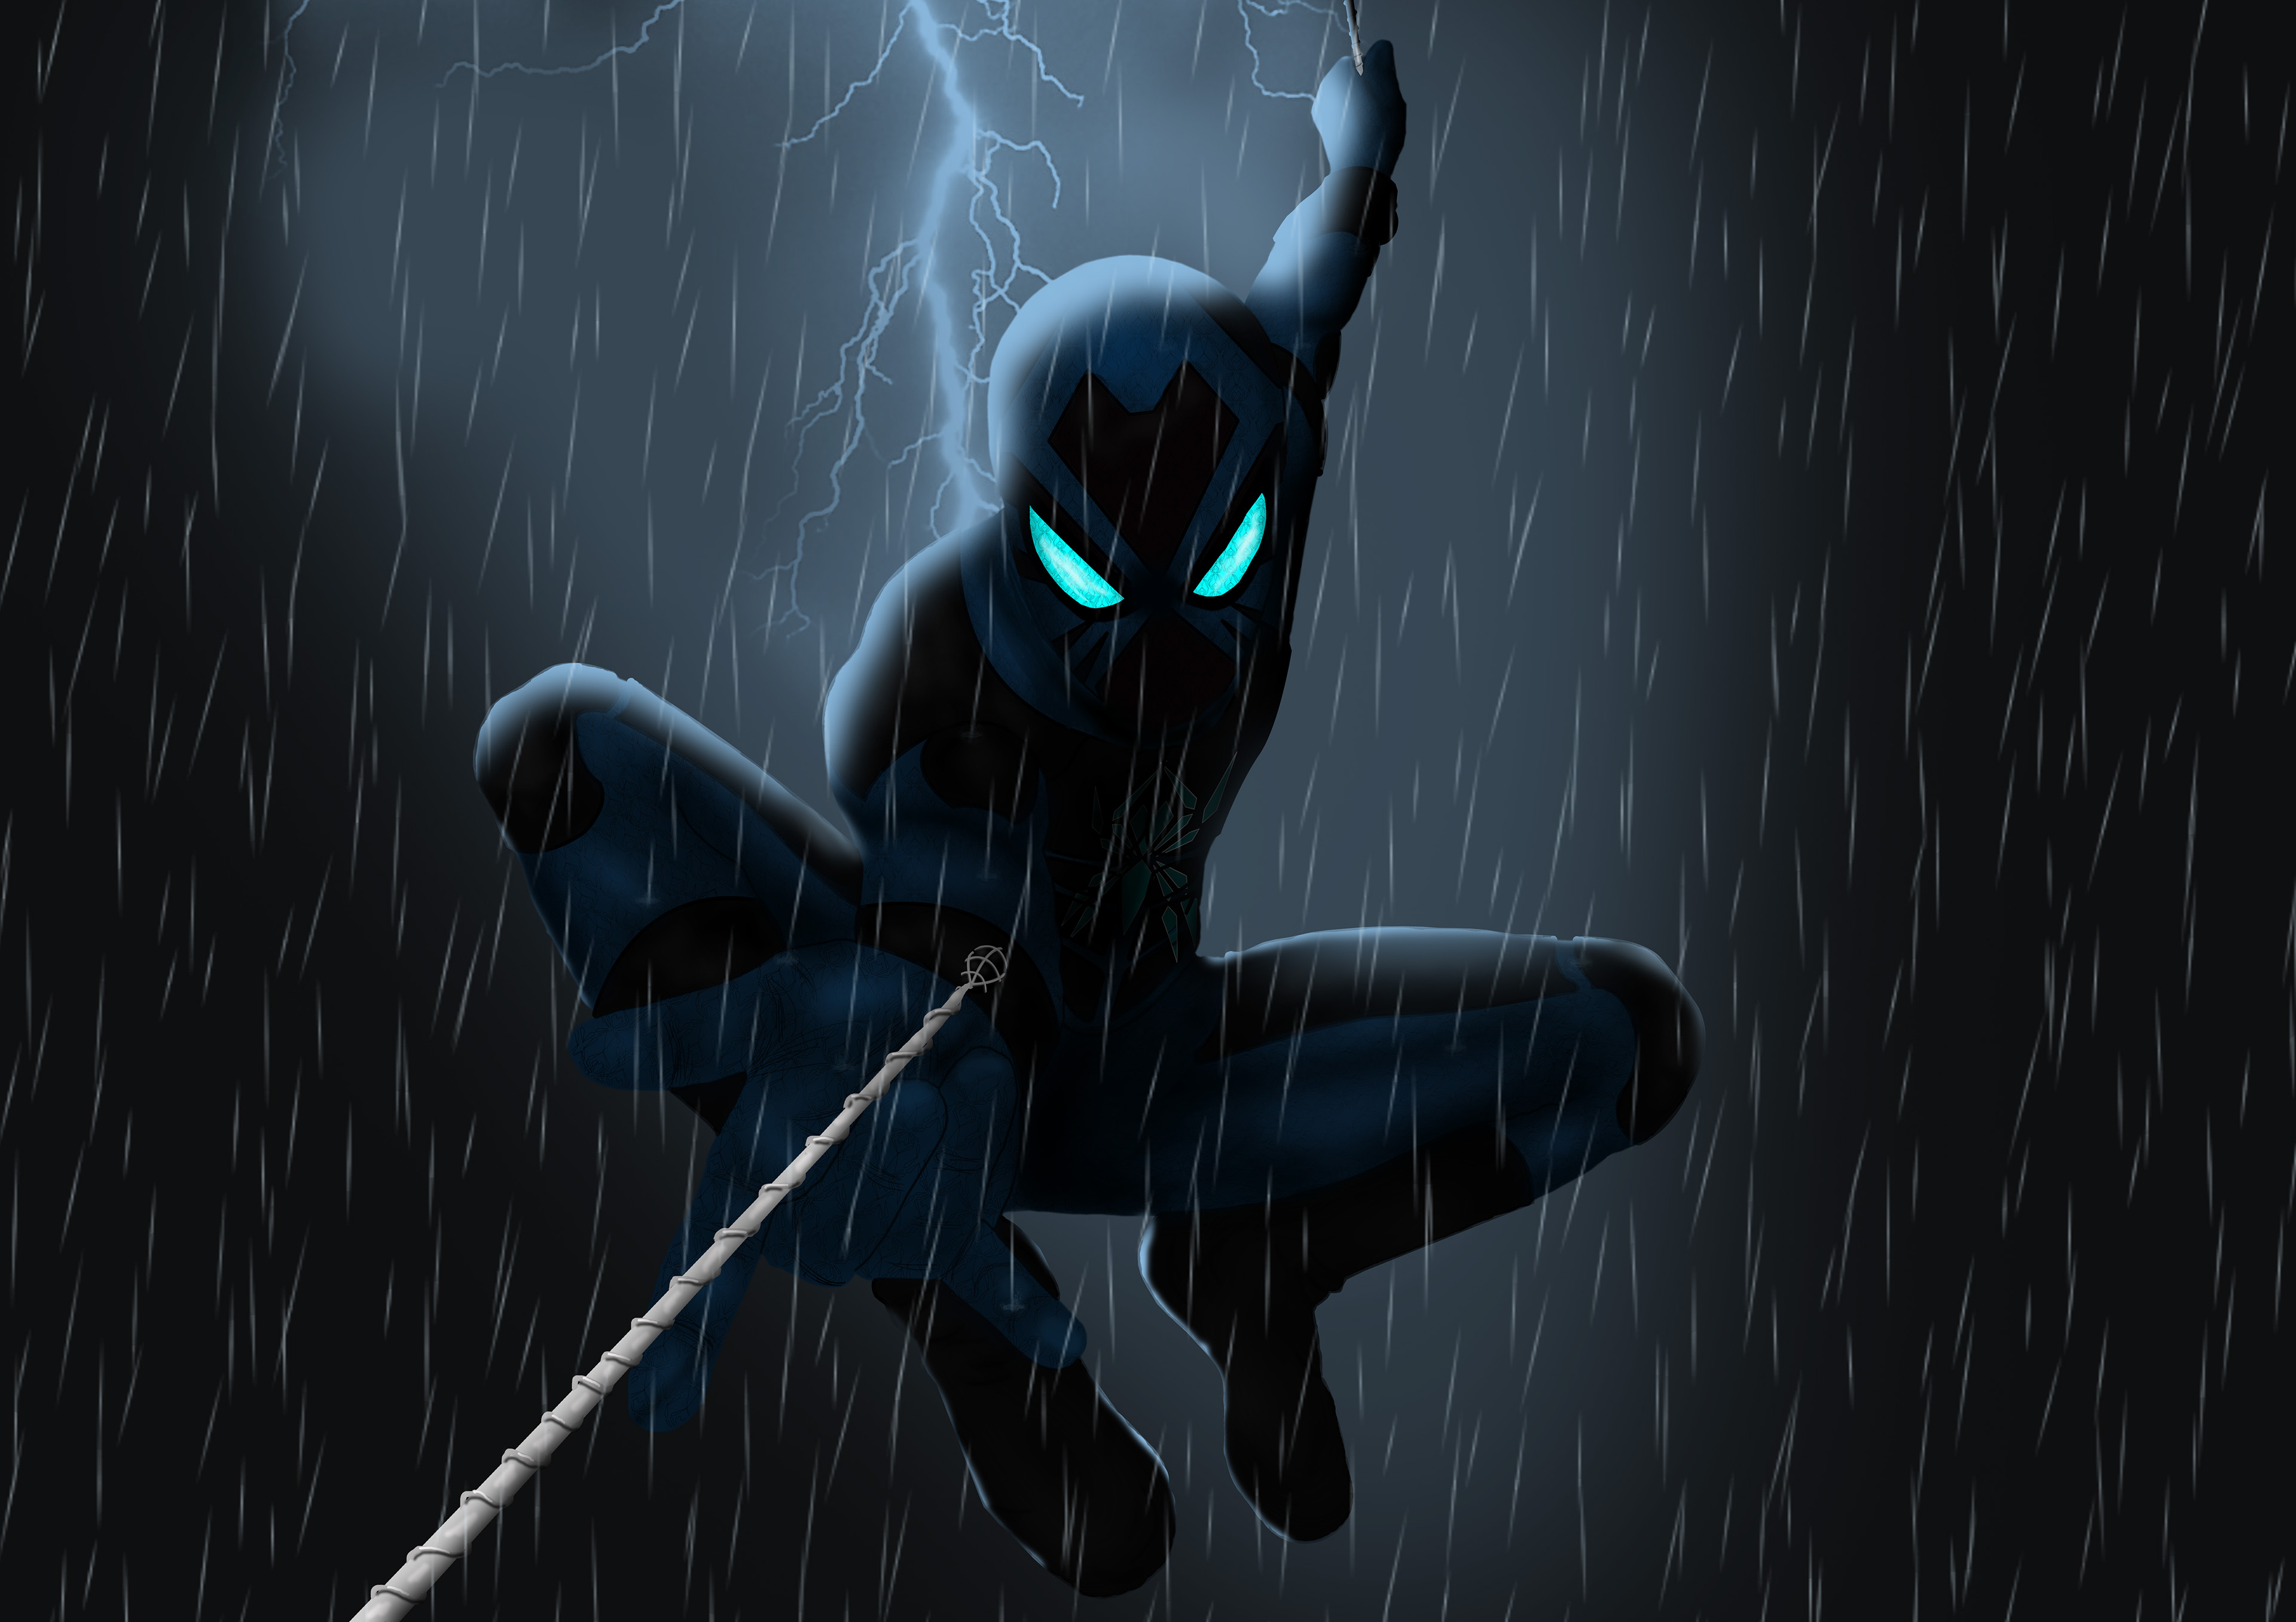 Картинка с черным человеком пауком в дождь